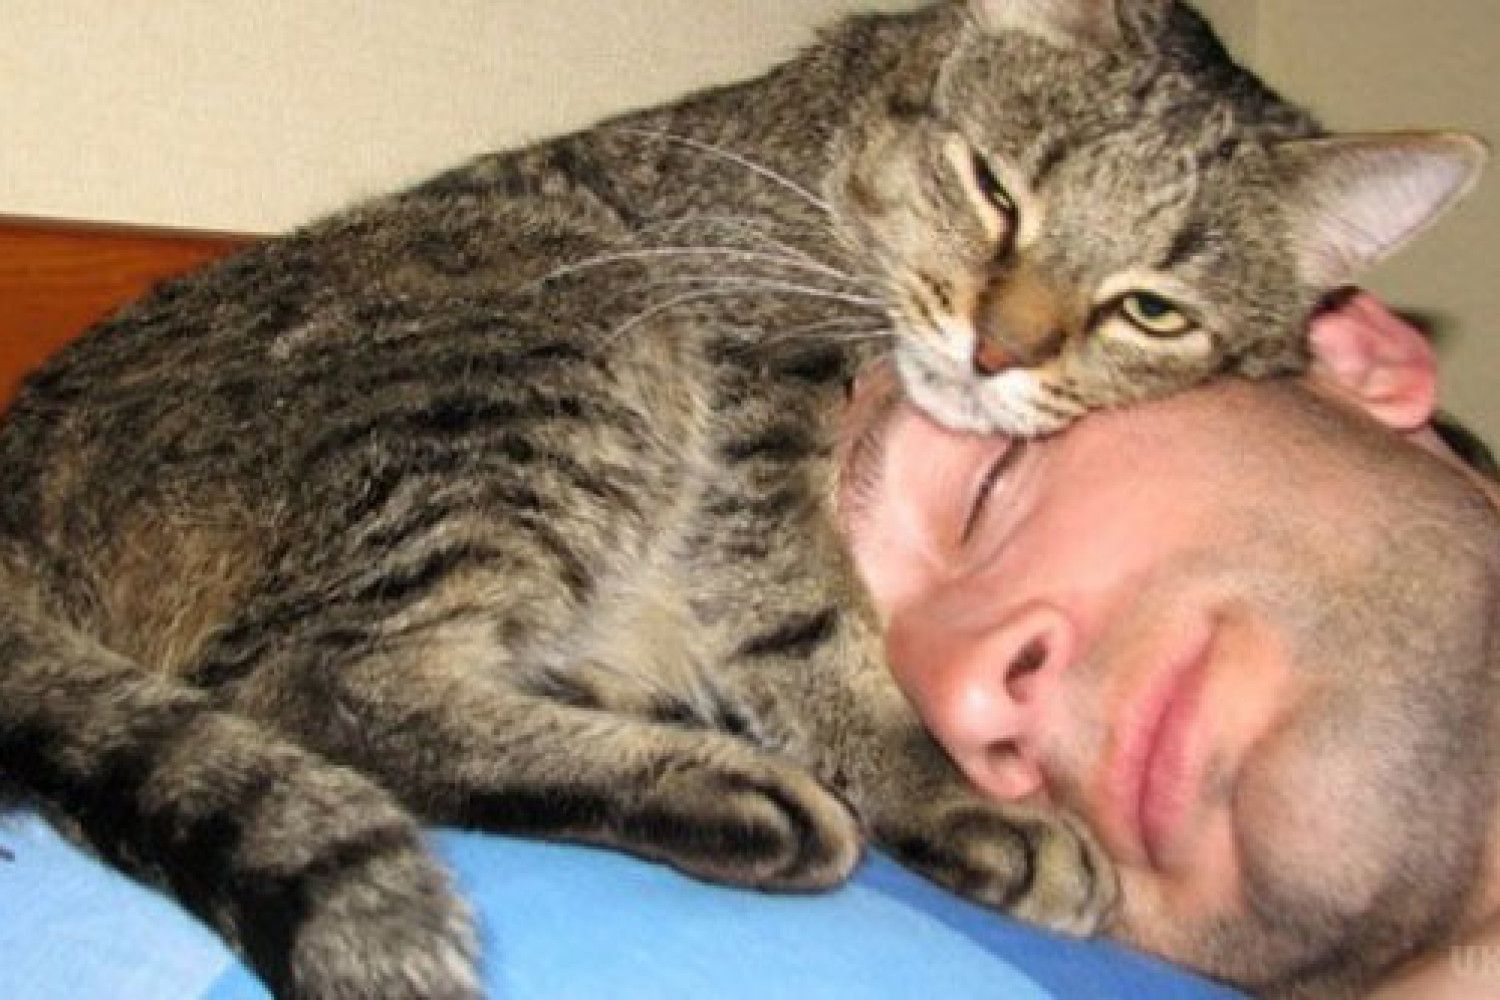 Почему кошки лежат на человеке